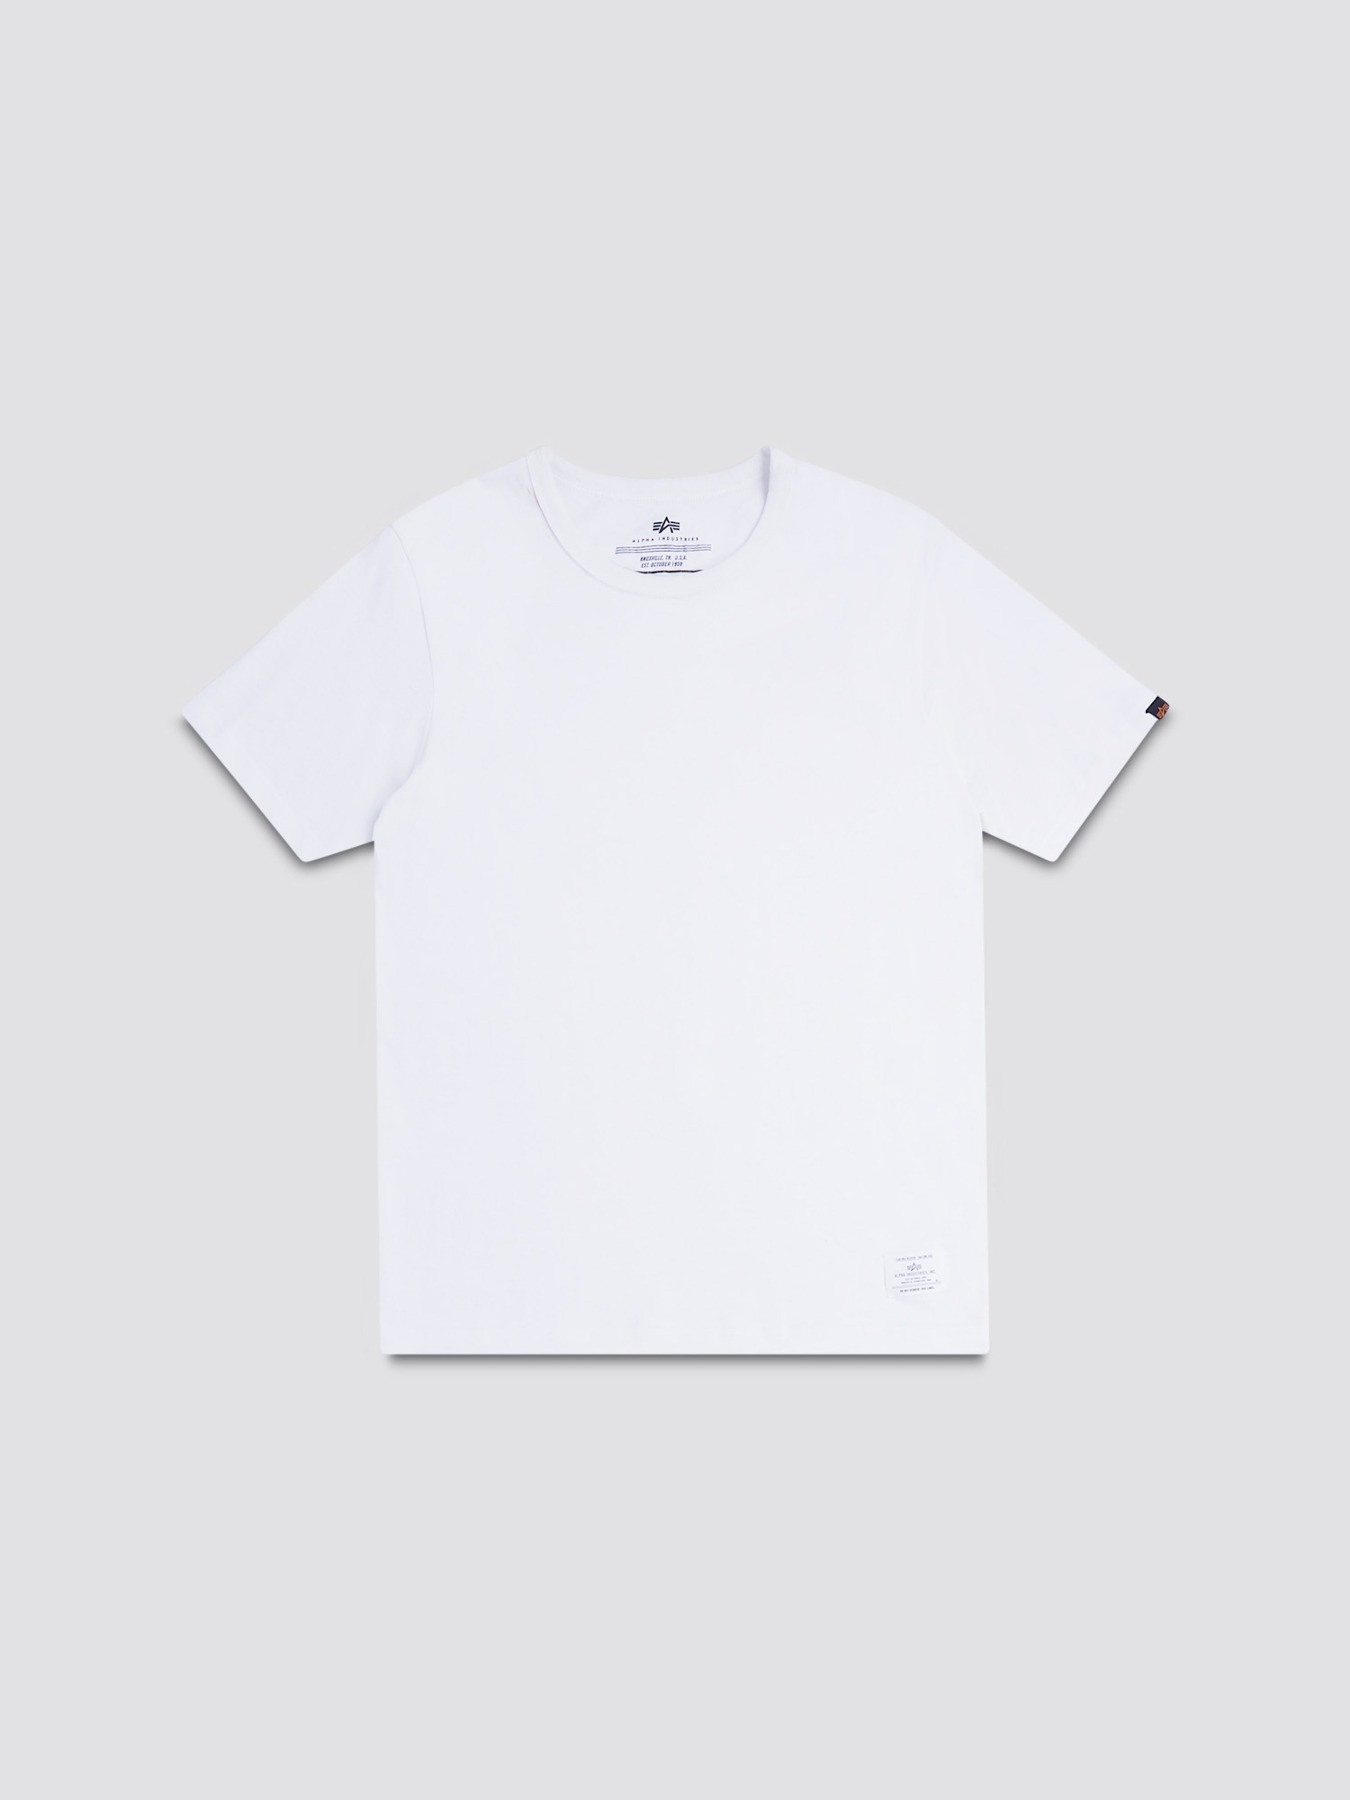 흰색 티셔츠